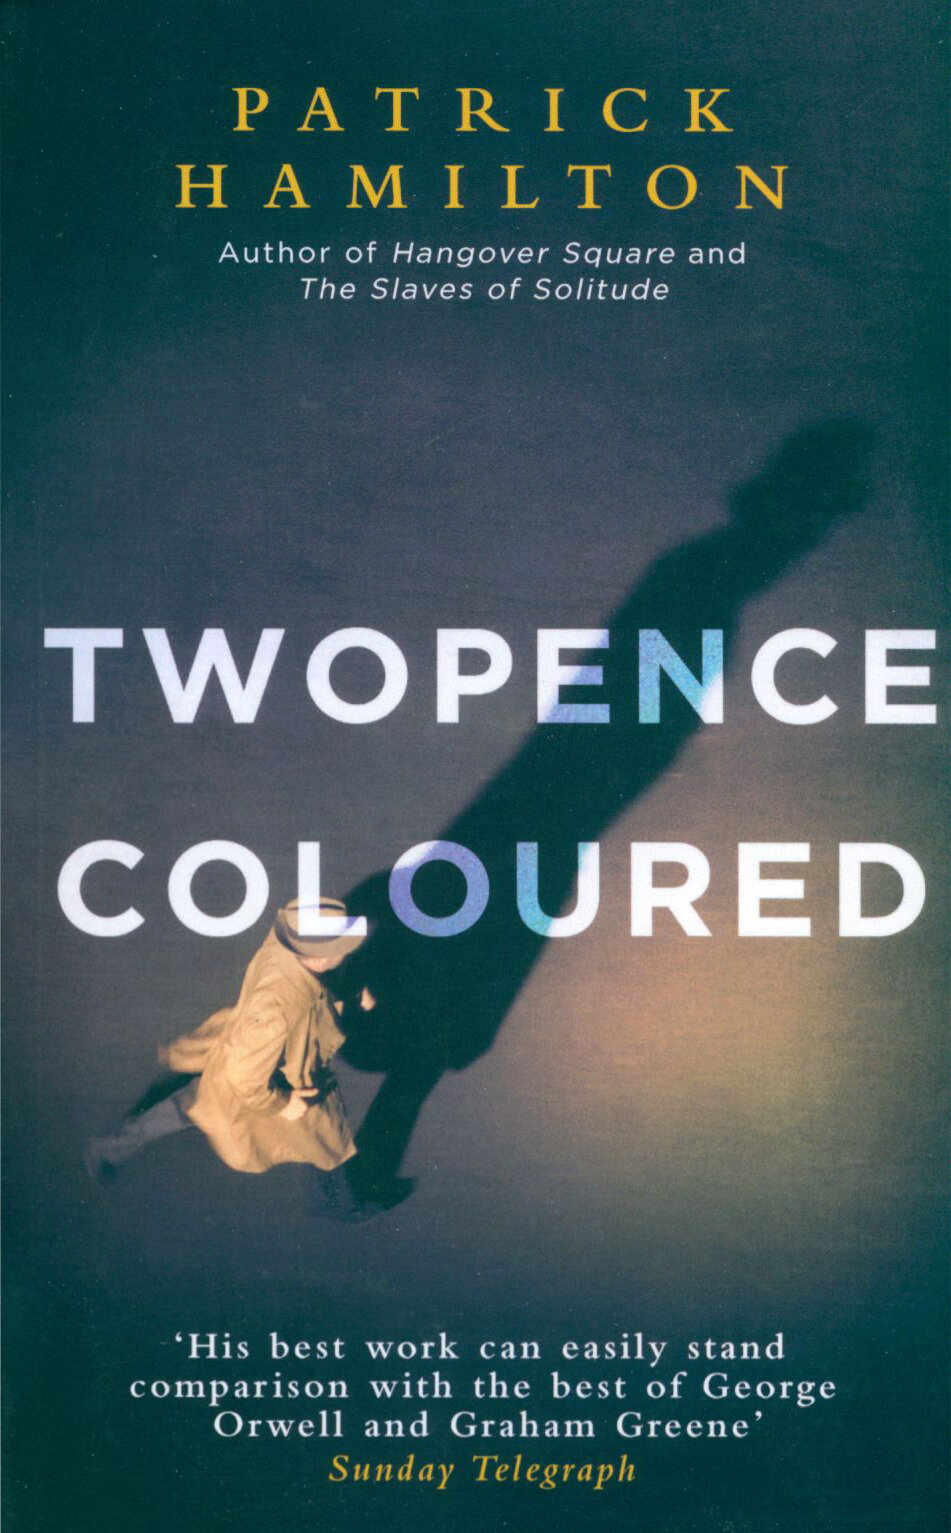 Twopence Coloured / Hamilton Patrick / Книга на Английском